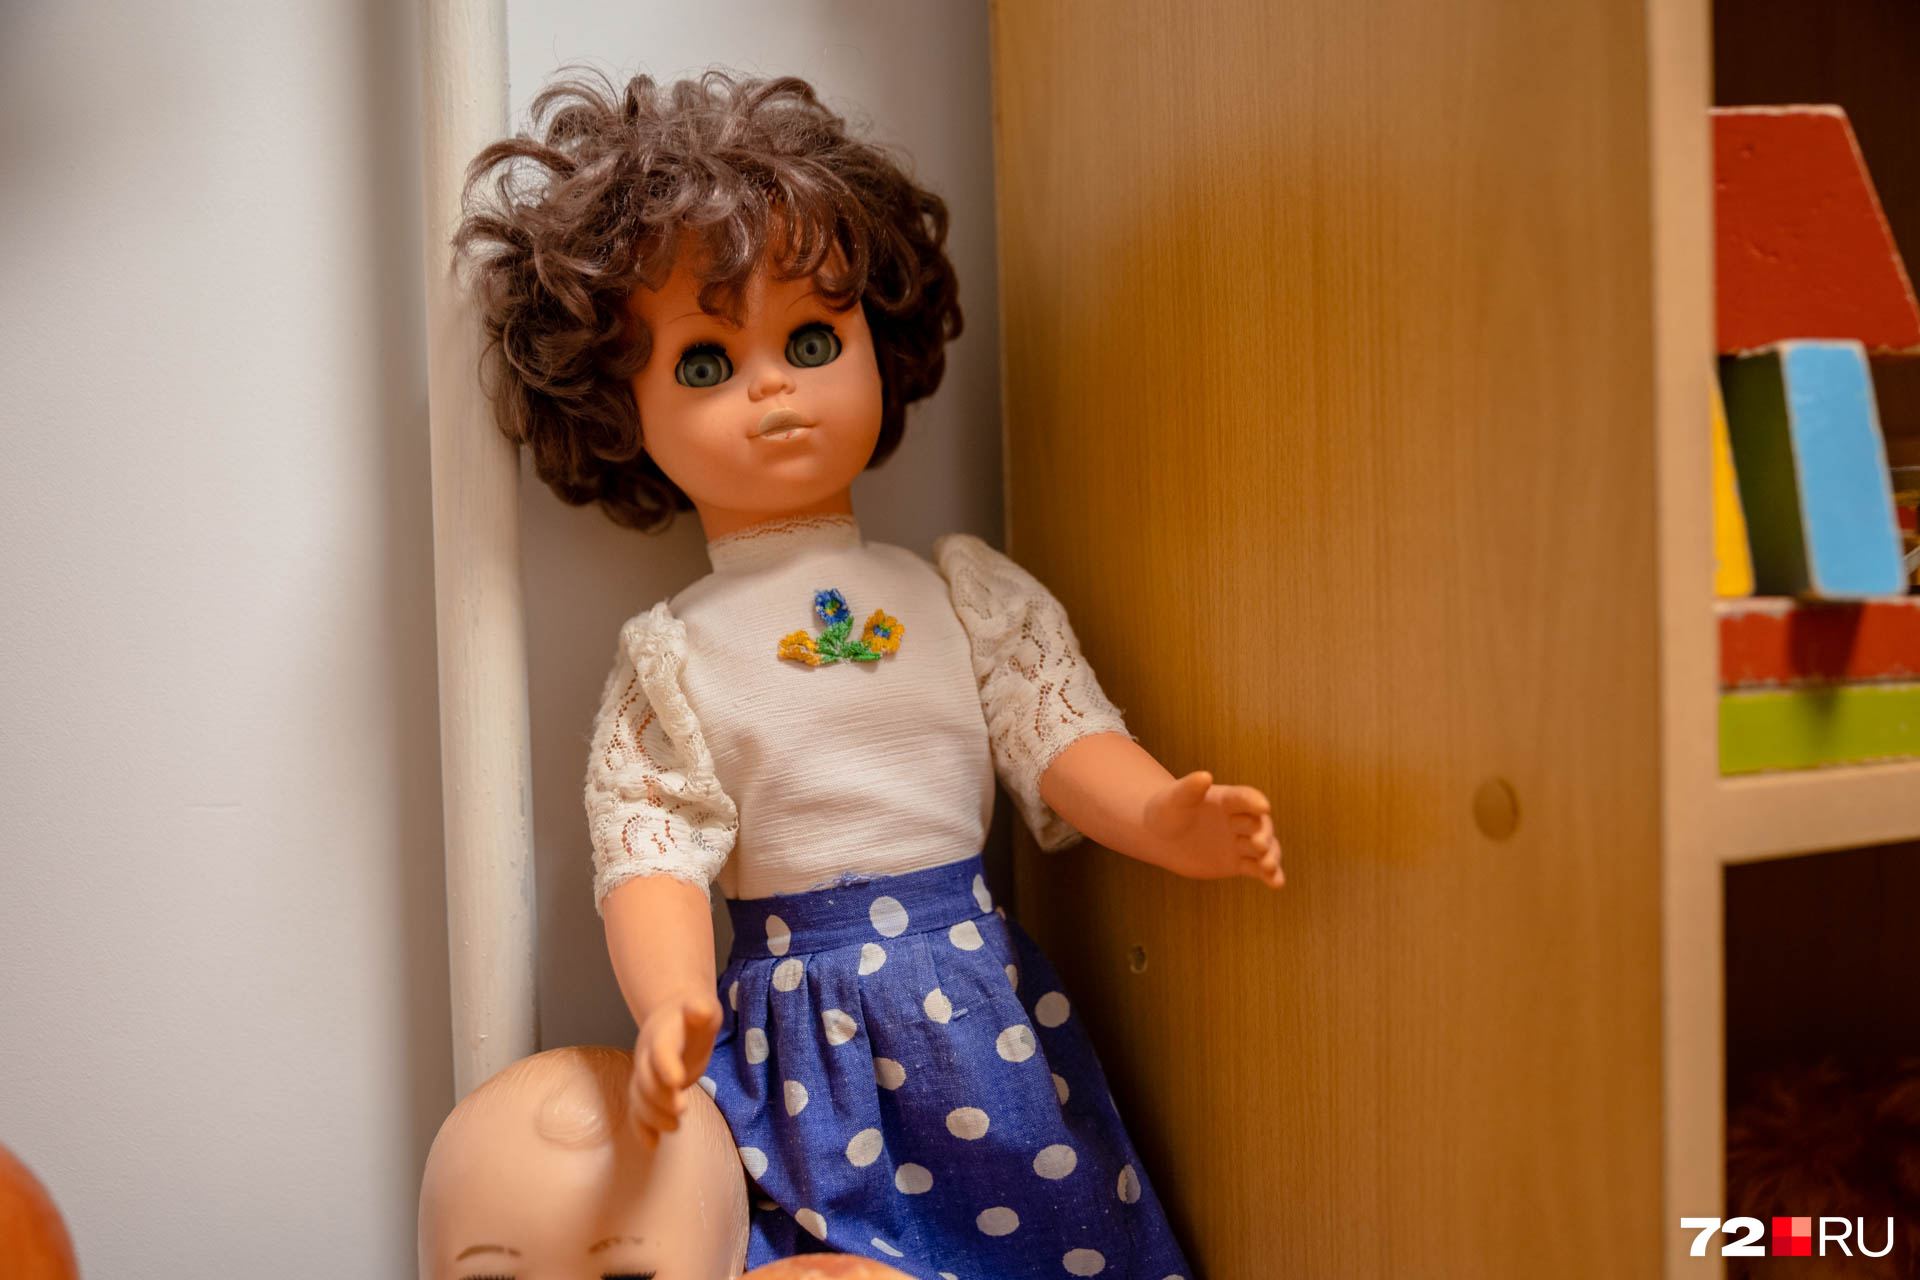 А это немецкая кукла. Их делали безымянными, но девочки всё равно давали им имена